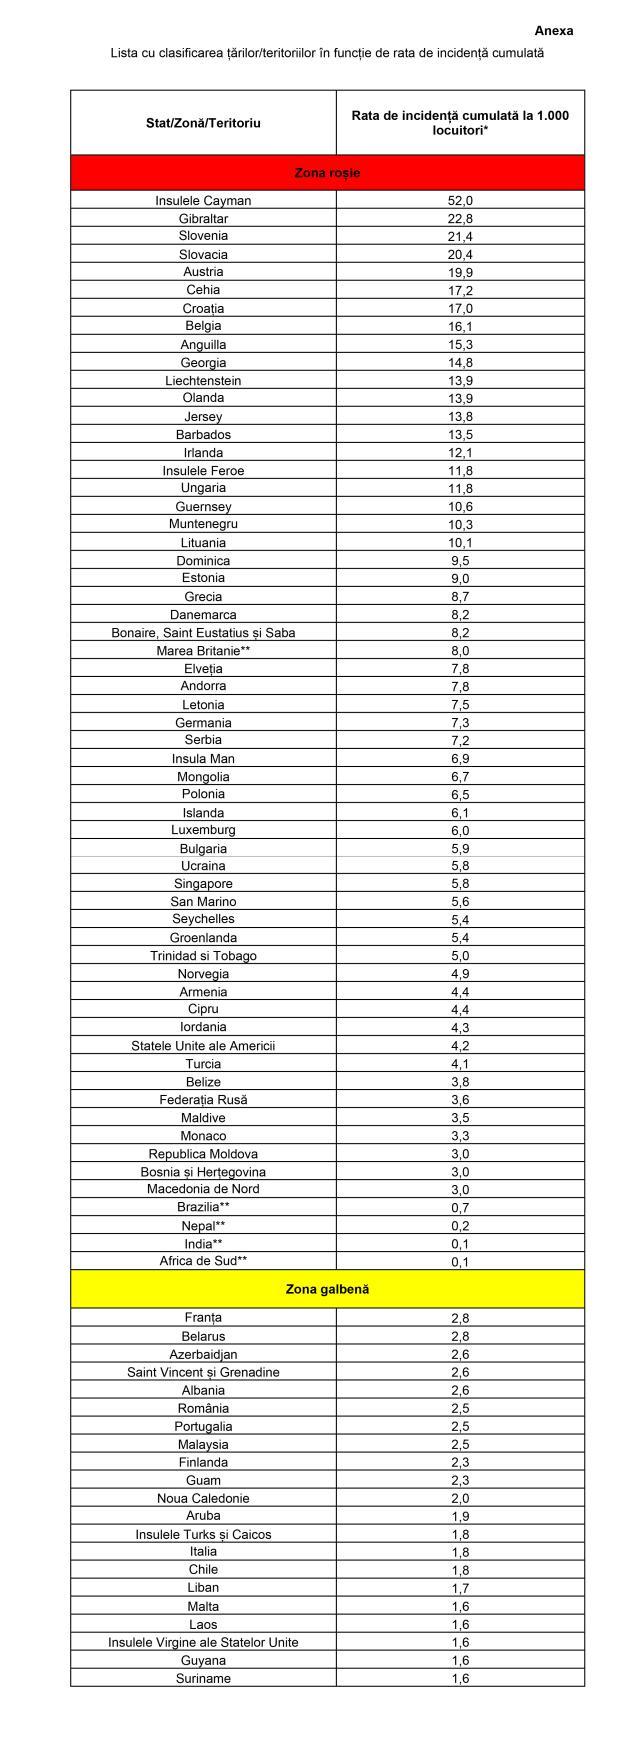 Lista cu clasificarea țărilor în funcție de rata de incidență cumulată